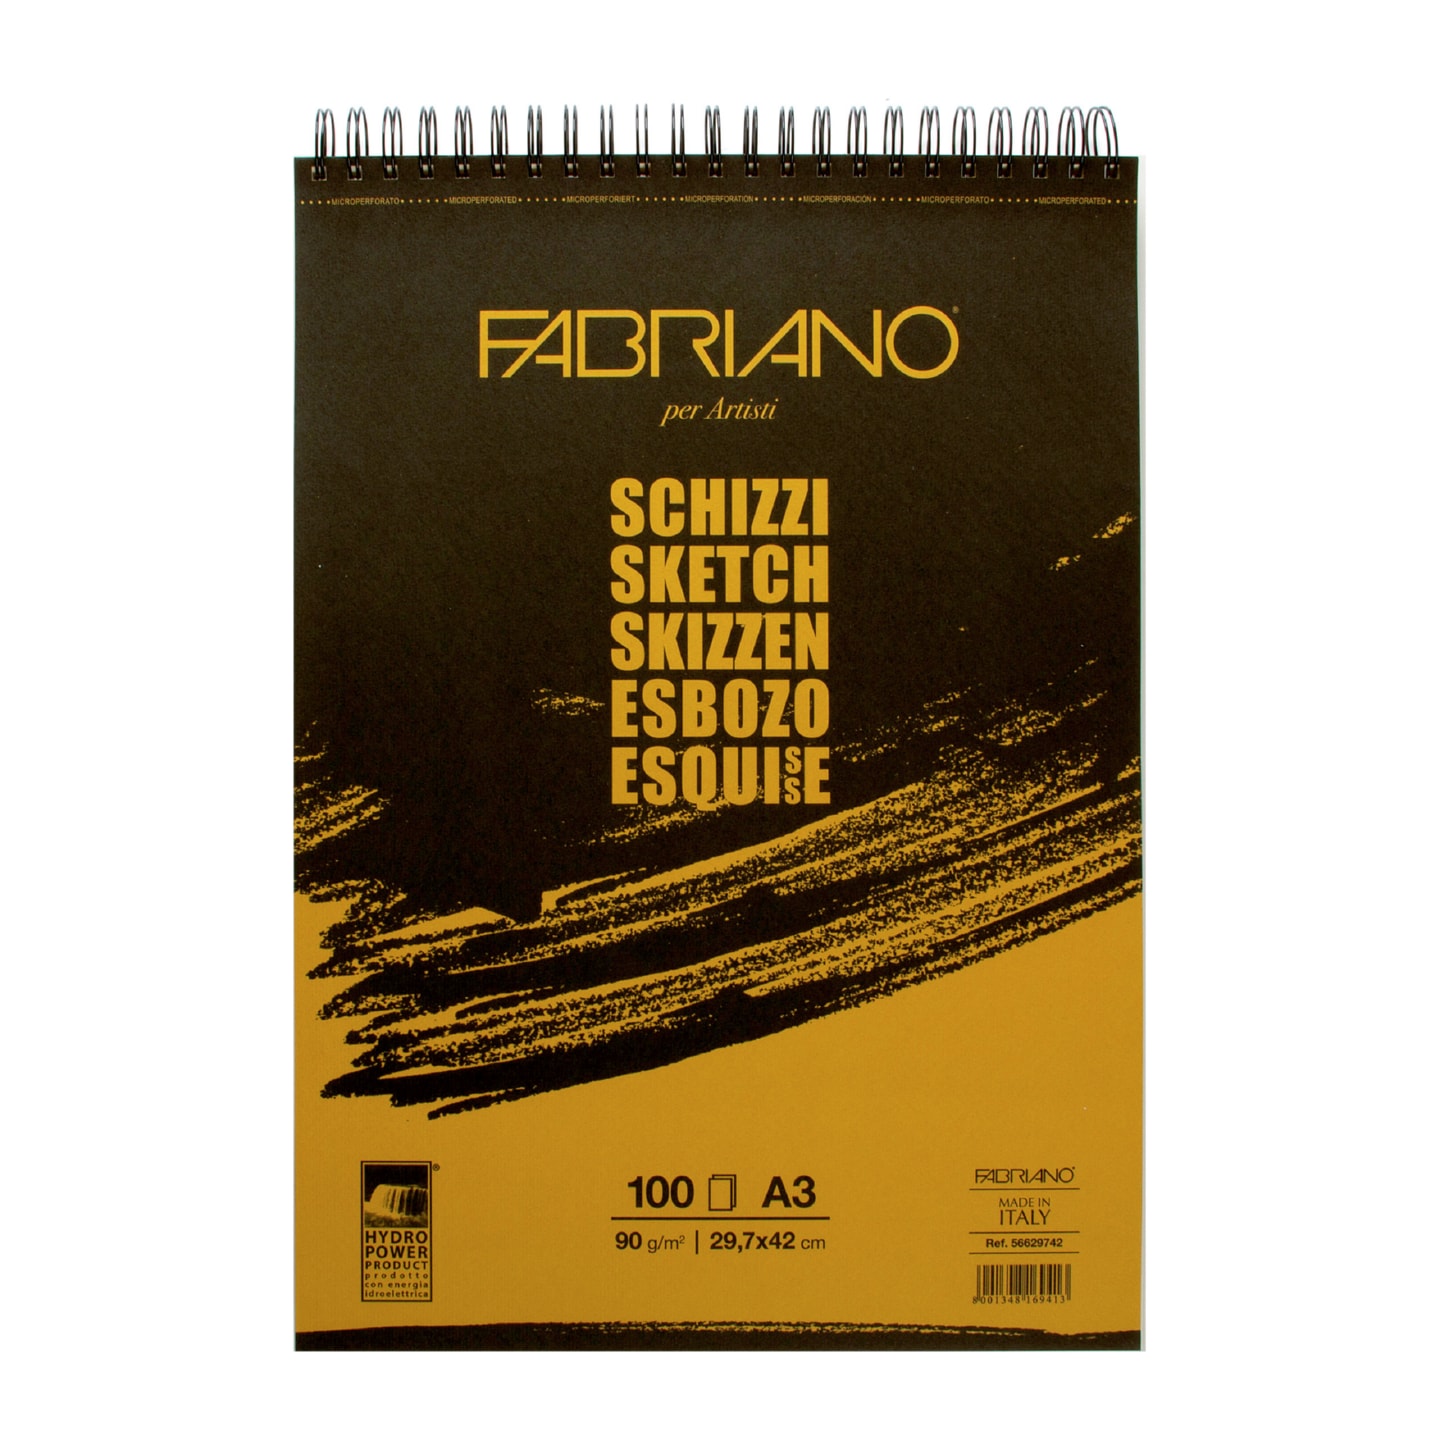 Альбом для зарисовок Schizzi 90г/м.кв 29,7x42см мелкозернистая темная обложка 100л спираль по короткой стороне.